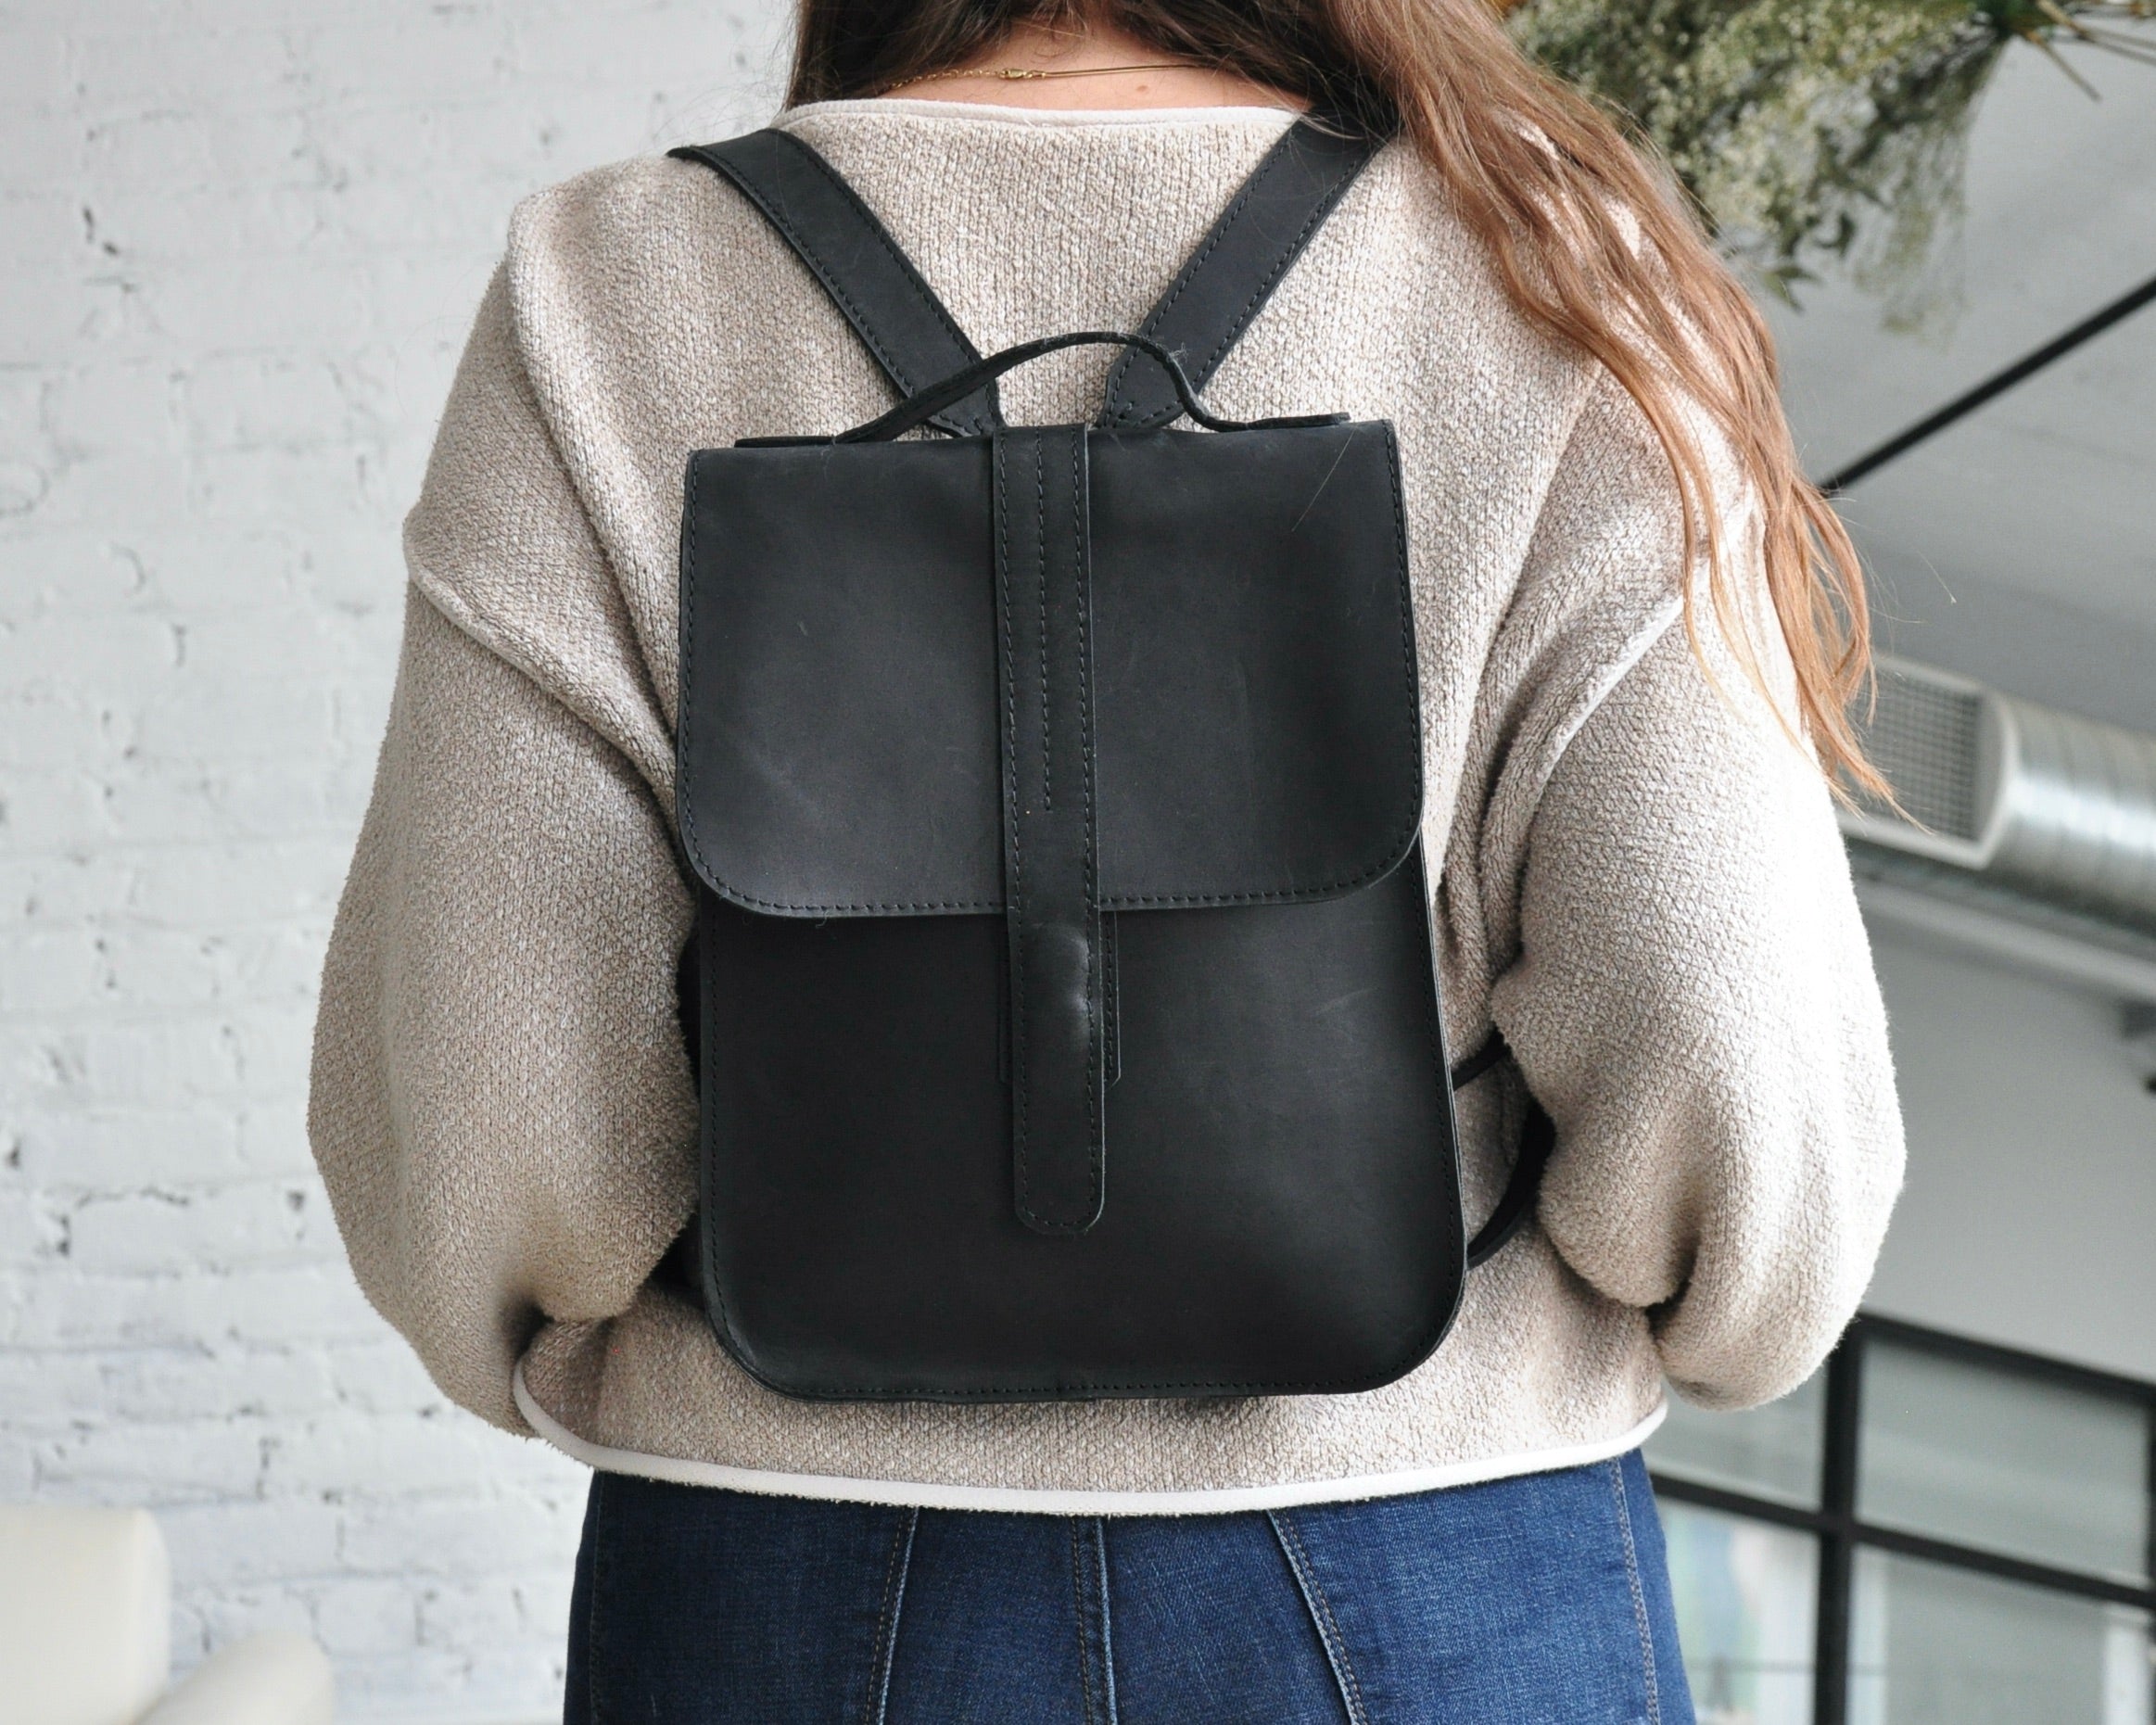 Mini Backpack